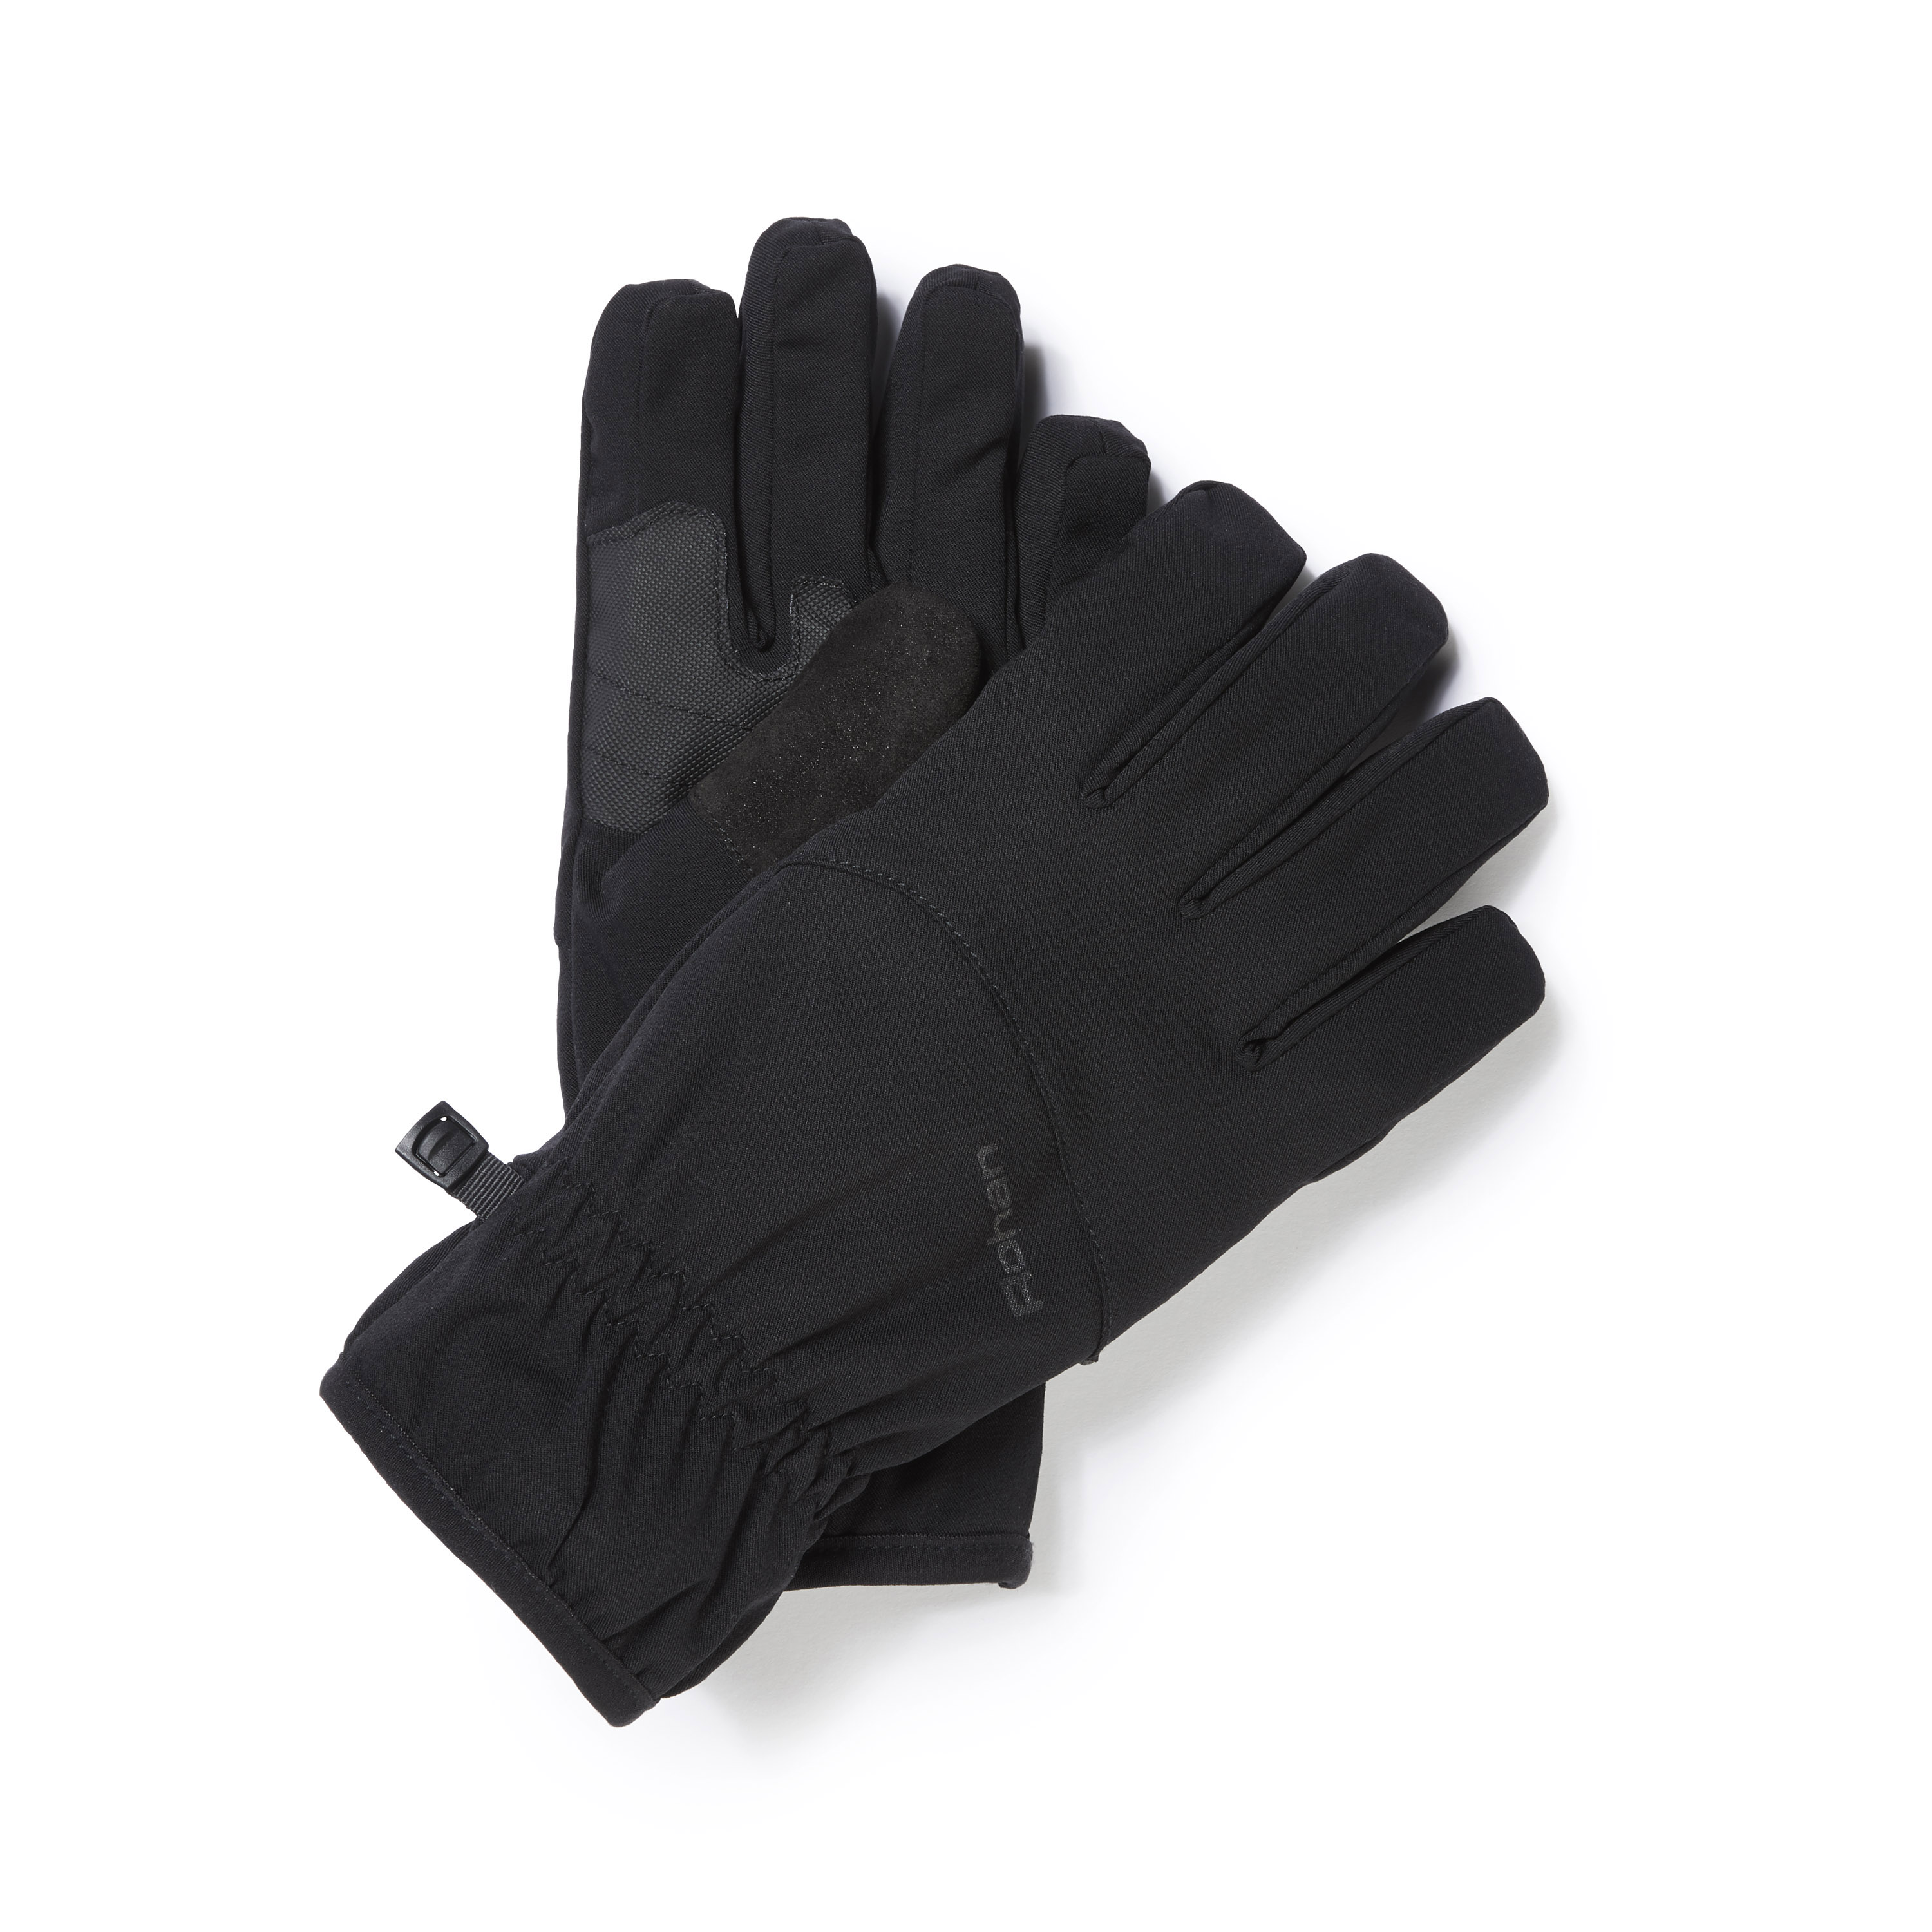 Storm Waterproof Gloves